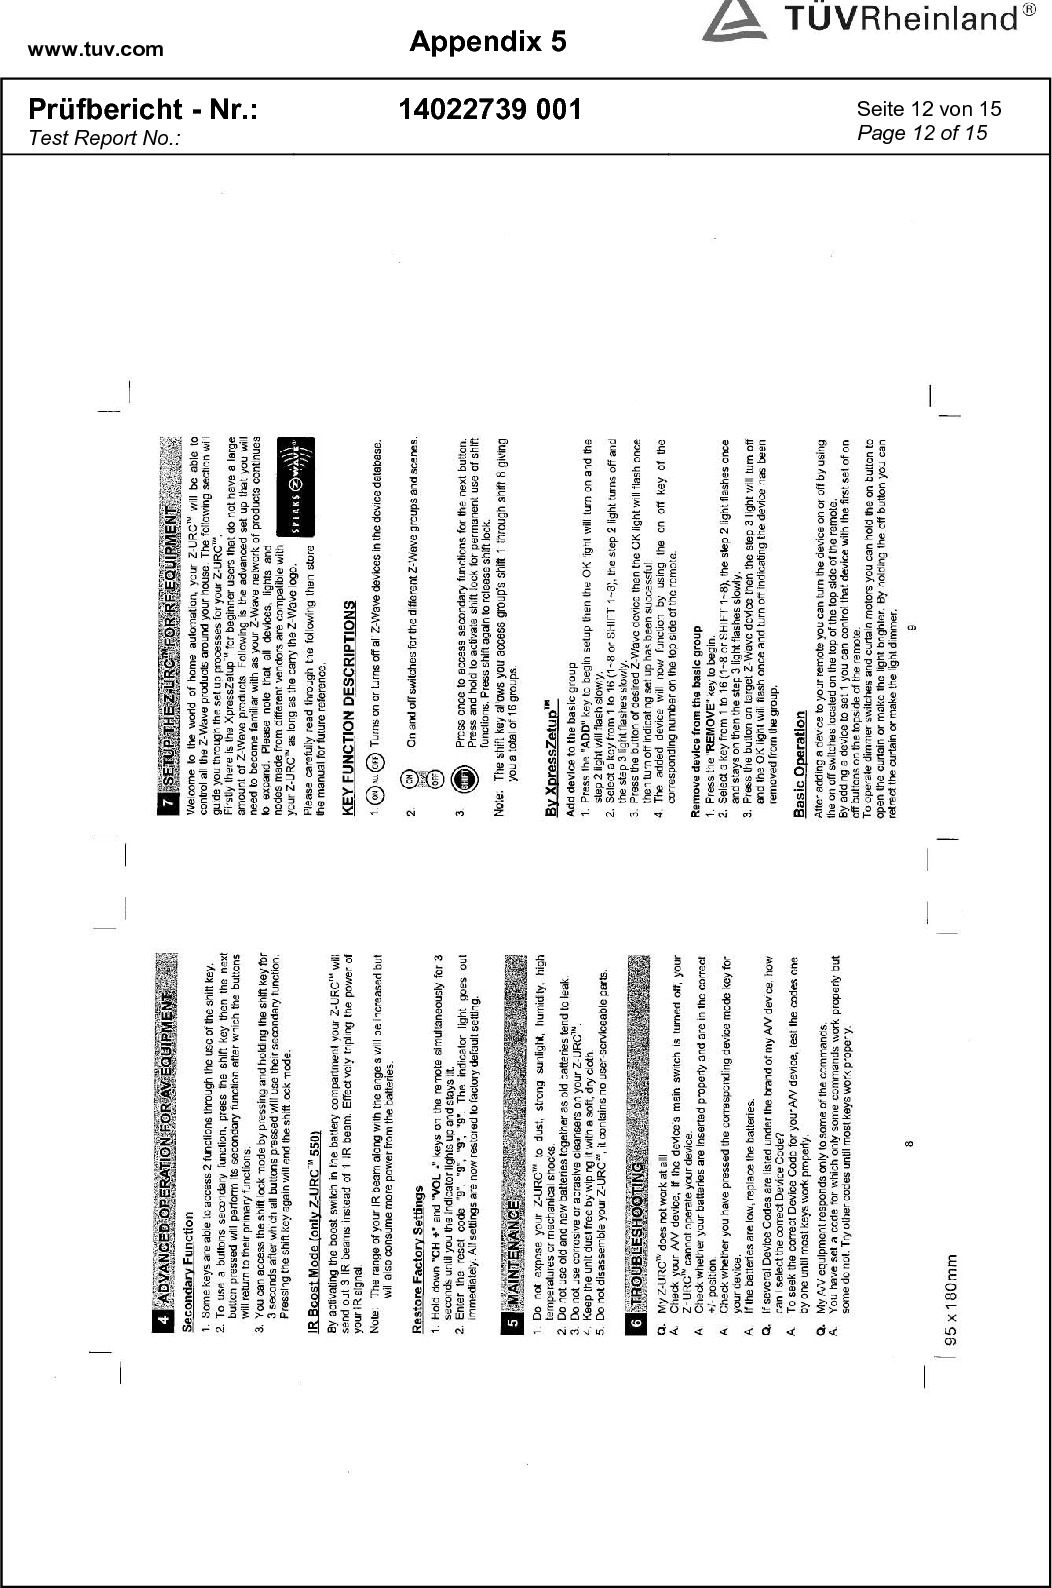 www.tuv.com  Appendix 5  Prüfbericht - Nr.: Test Report No.: 14022739 001  Seite 12 von 15 Page 12 of 15   